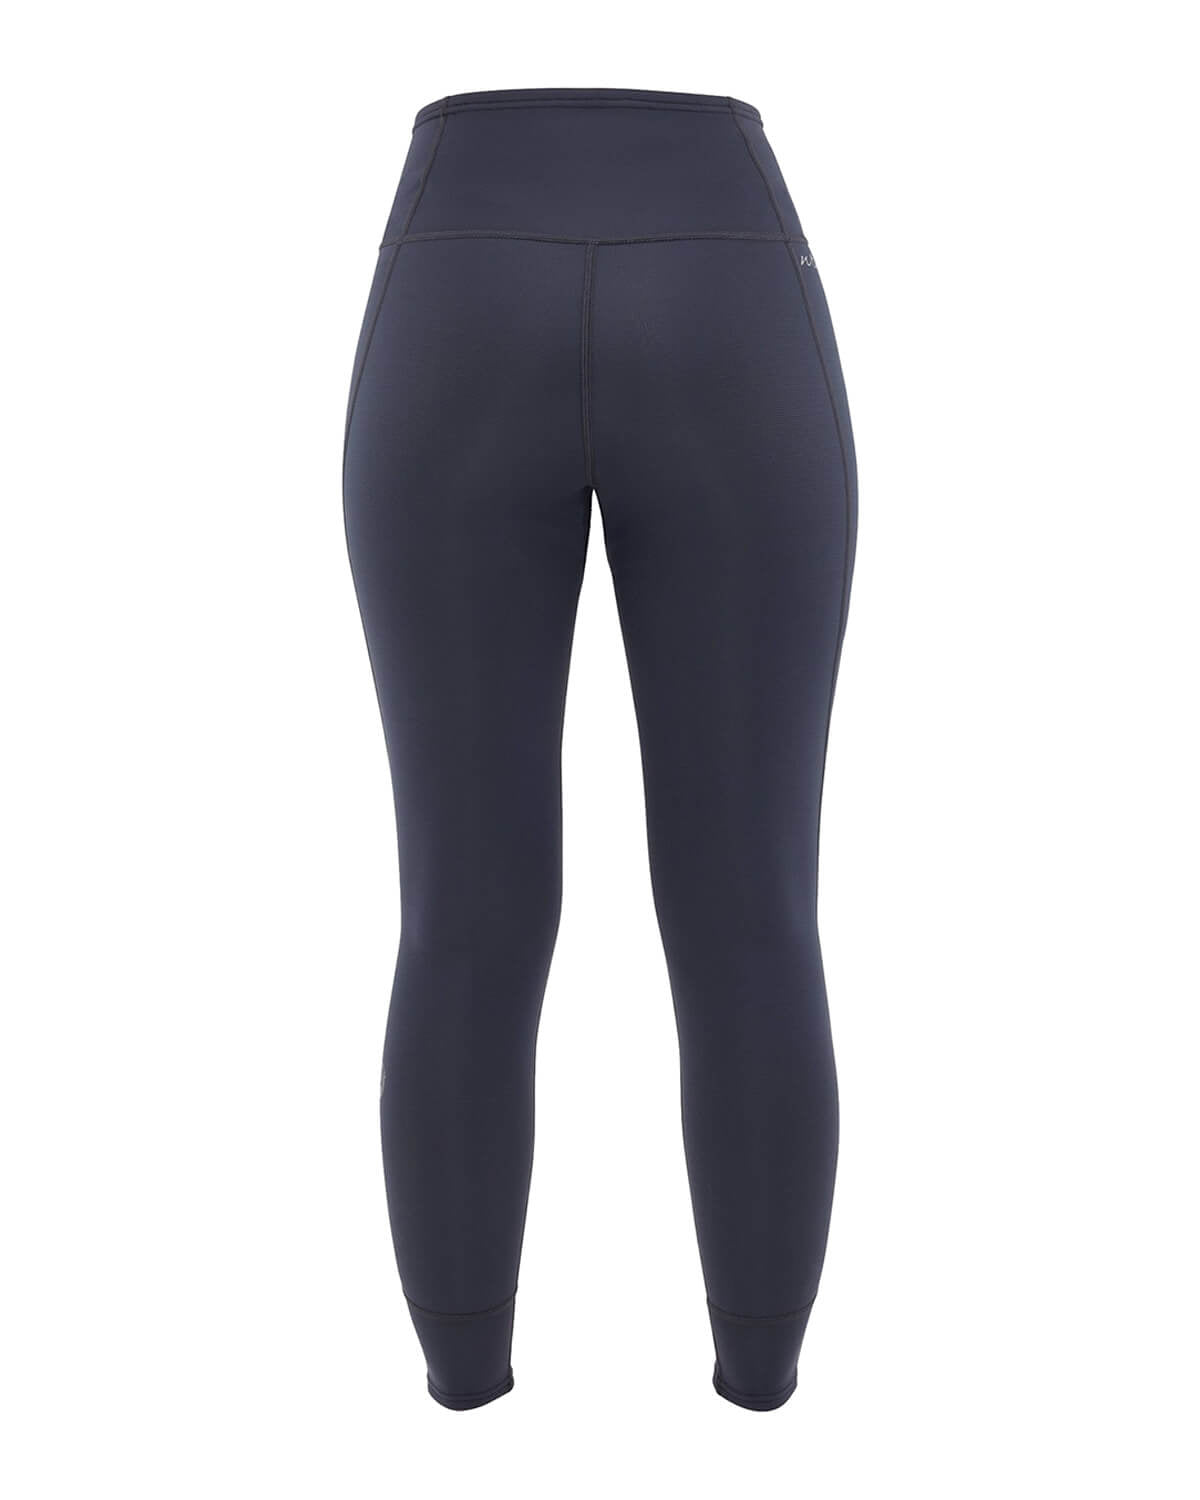 0.5mm Women's NRS HydroSkin Pants | Wetsuit Wearhouse